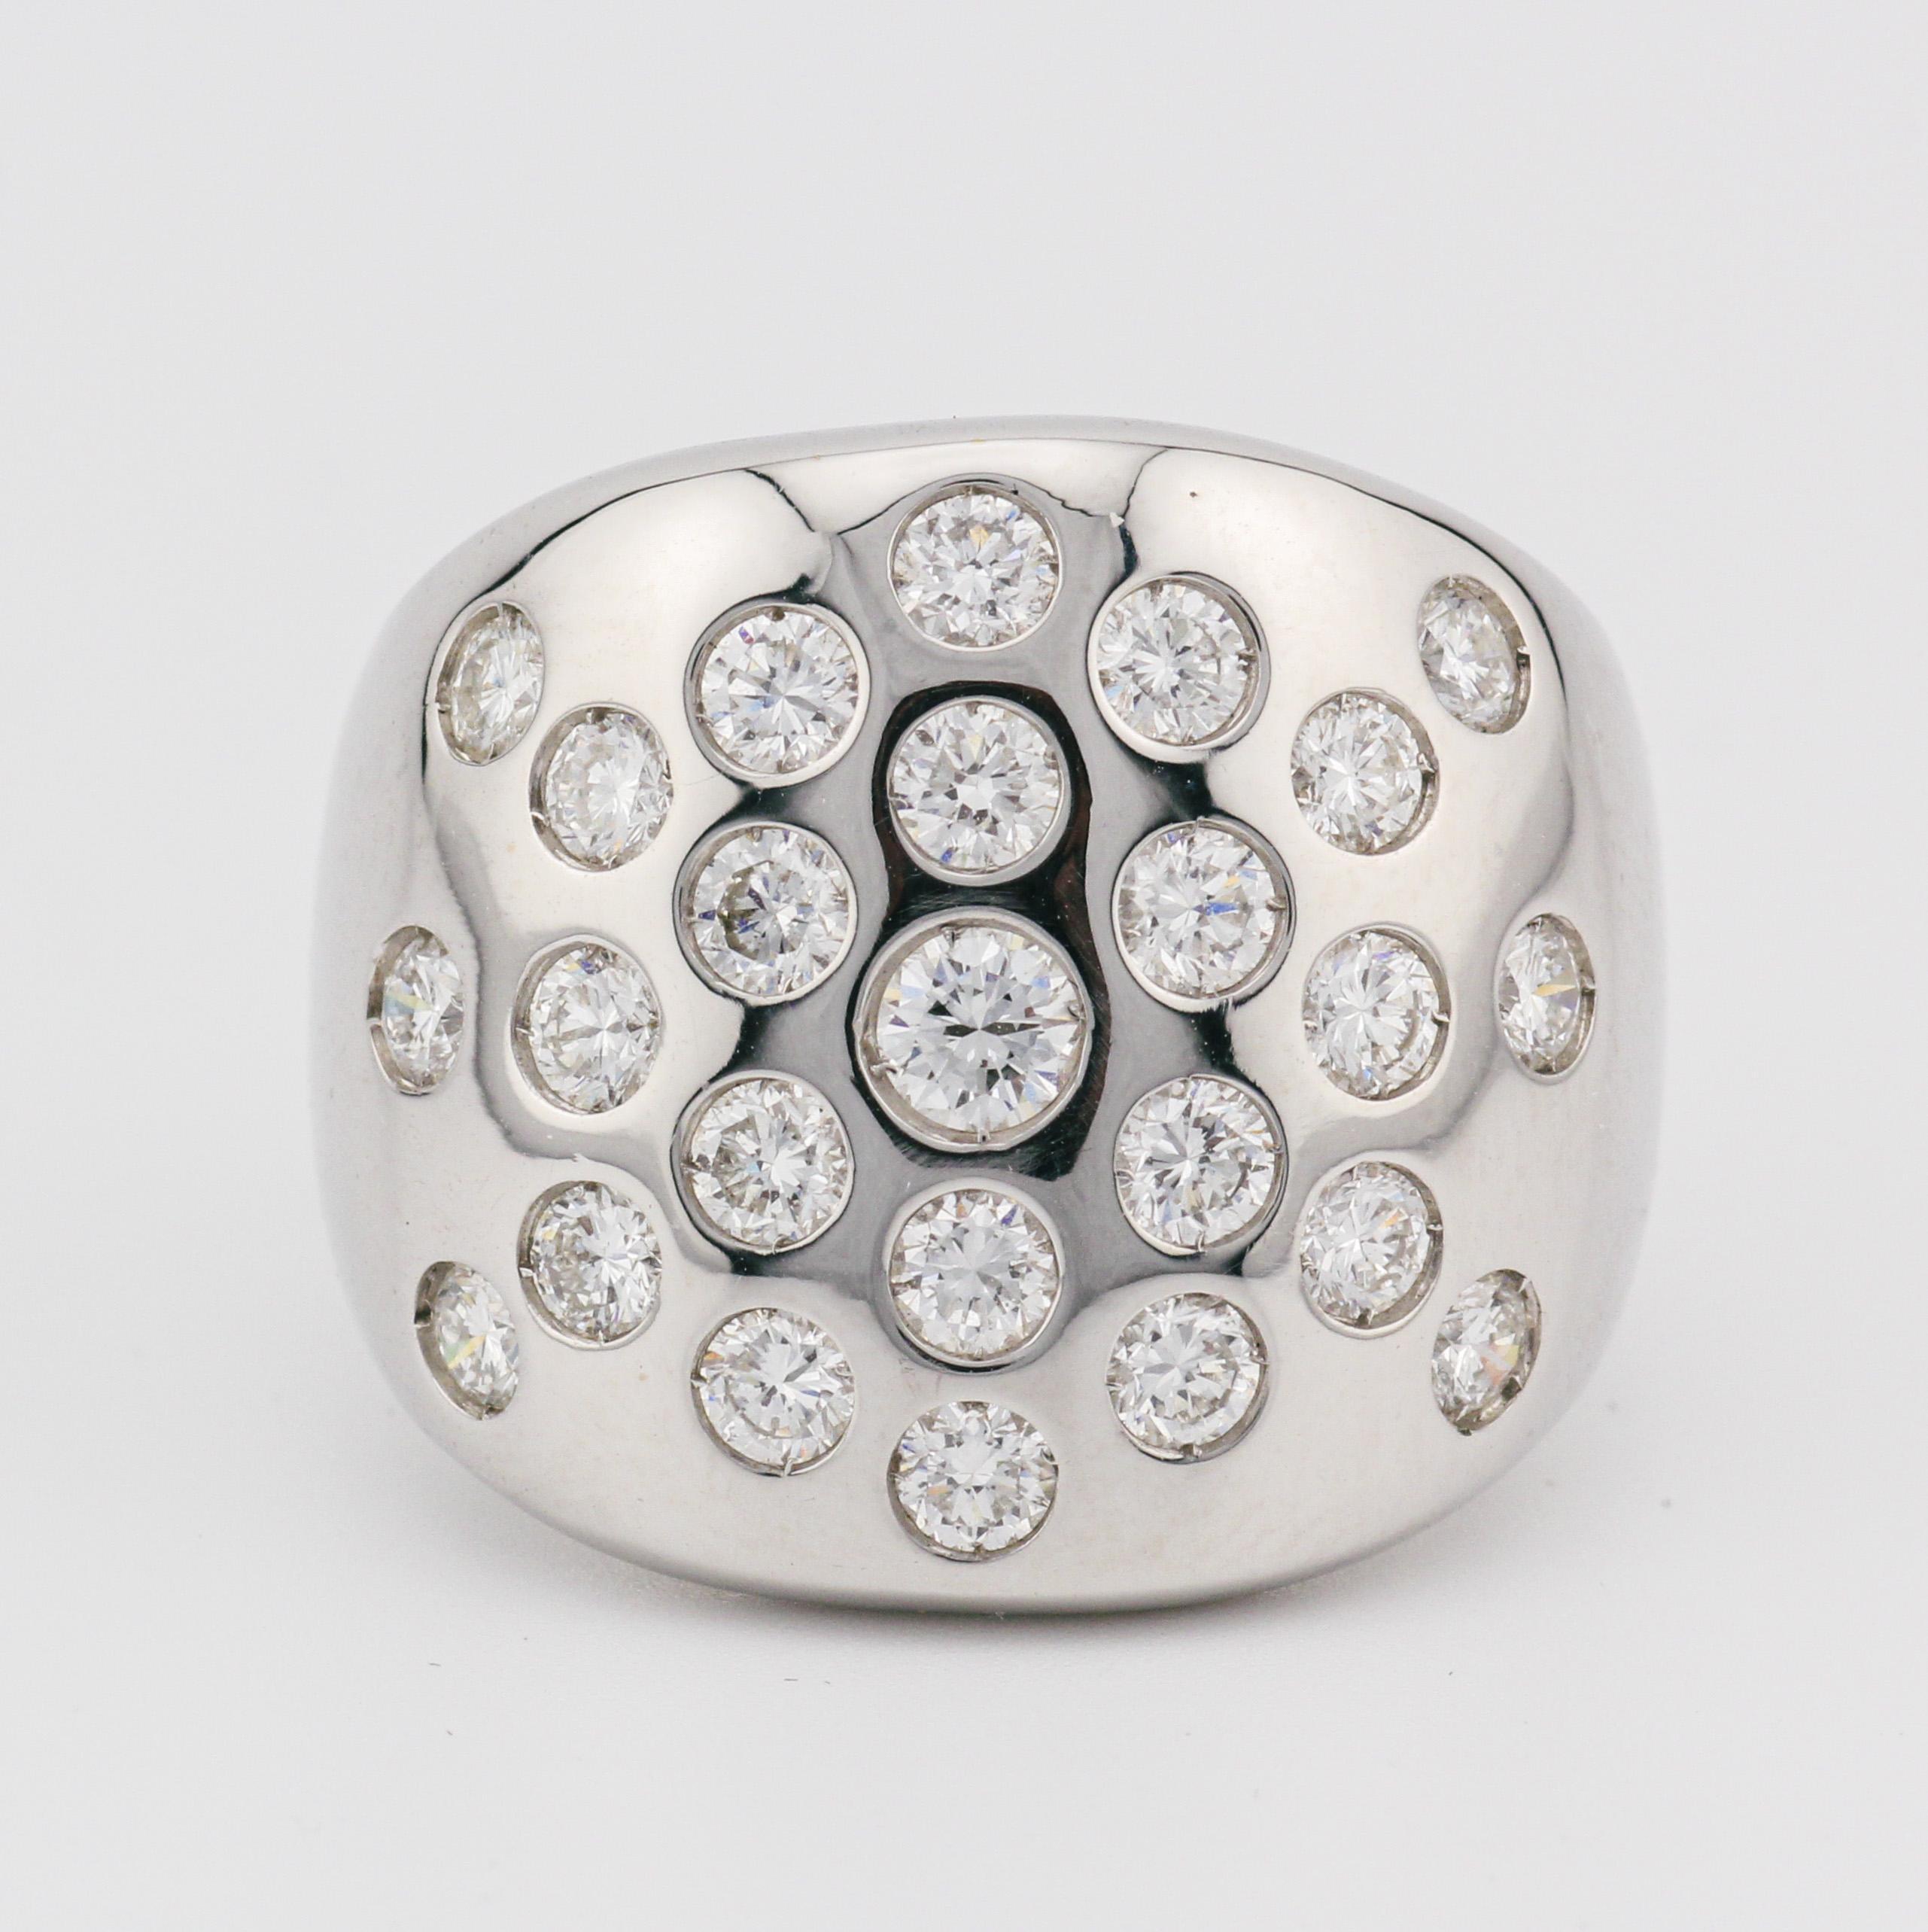 Whiting présente la bague dôme Hermes en or blanc 18 carats de 1,45 carat de diamants - une fusion fascinante de sophistication intemporelle et d'opulence luxueuse. Réalisée avec une précision méticuleuse et ornée d'une remarquable collection de